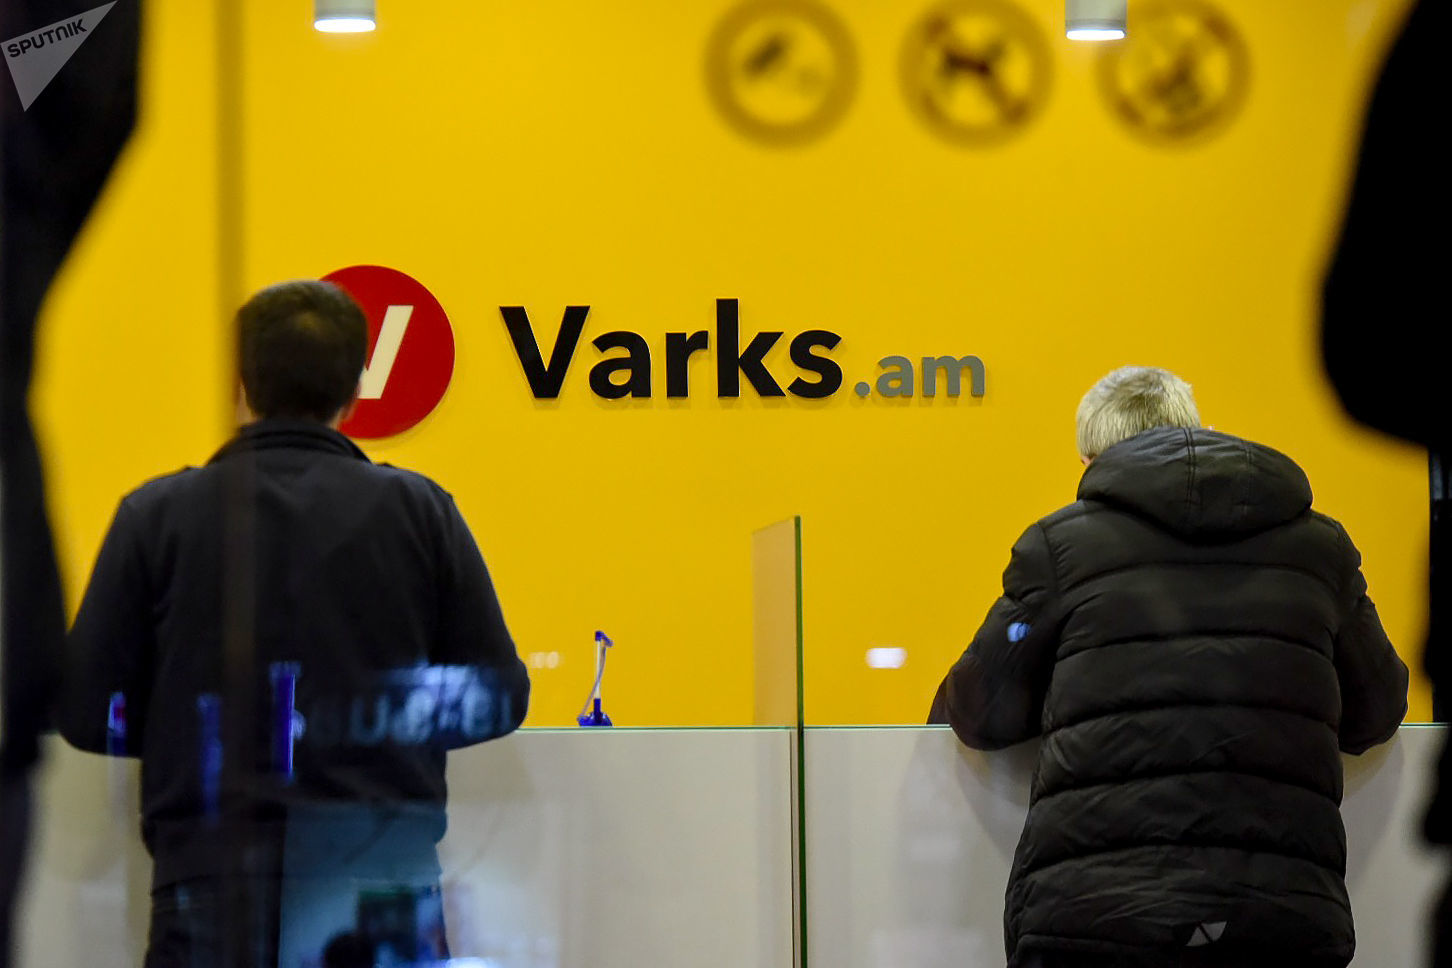 ԿԲ-ի ստեղծած լուծարային հանձնաժողովը հավաքում է Varks.am-ի վարկերը. 2630 քաղաքացու դեմ հայց է ներկայացվել